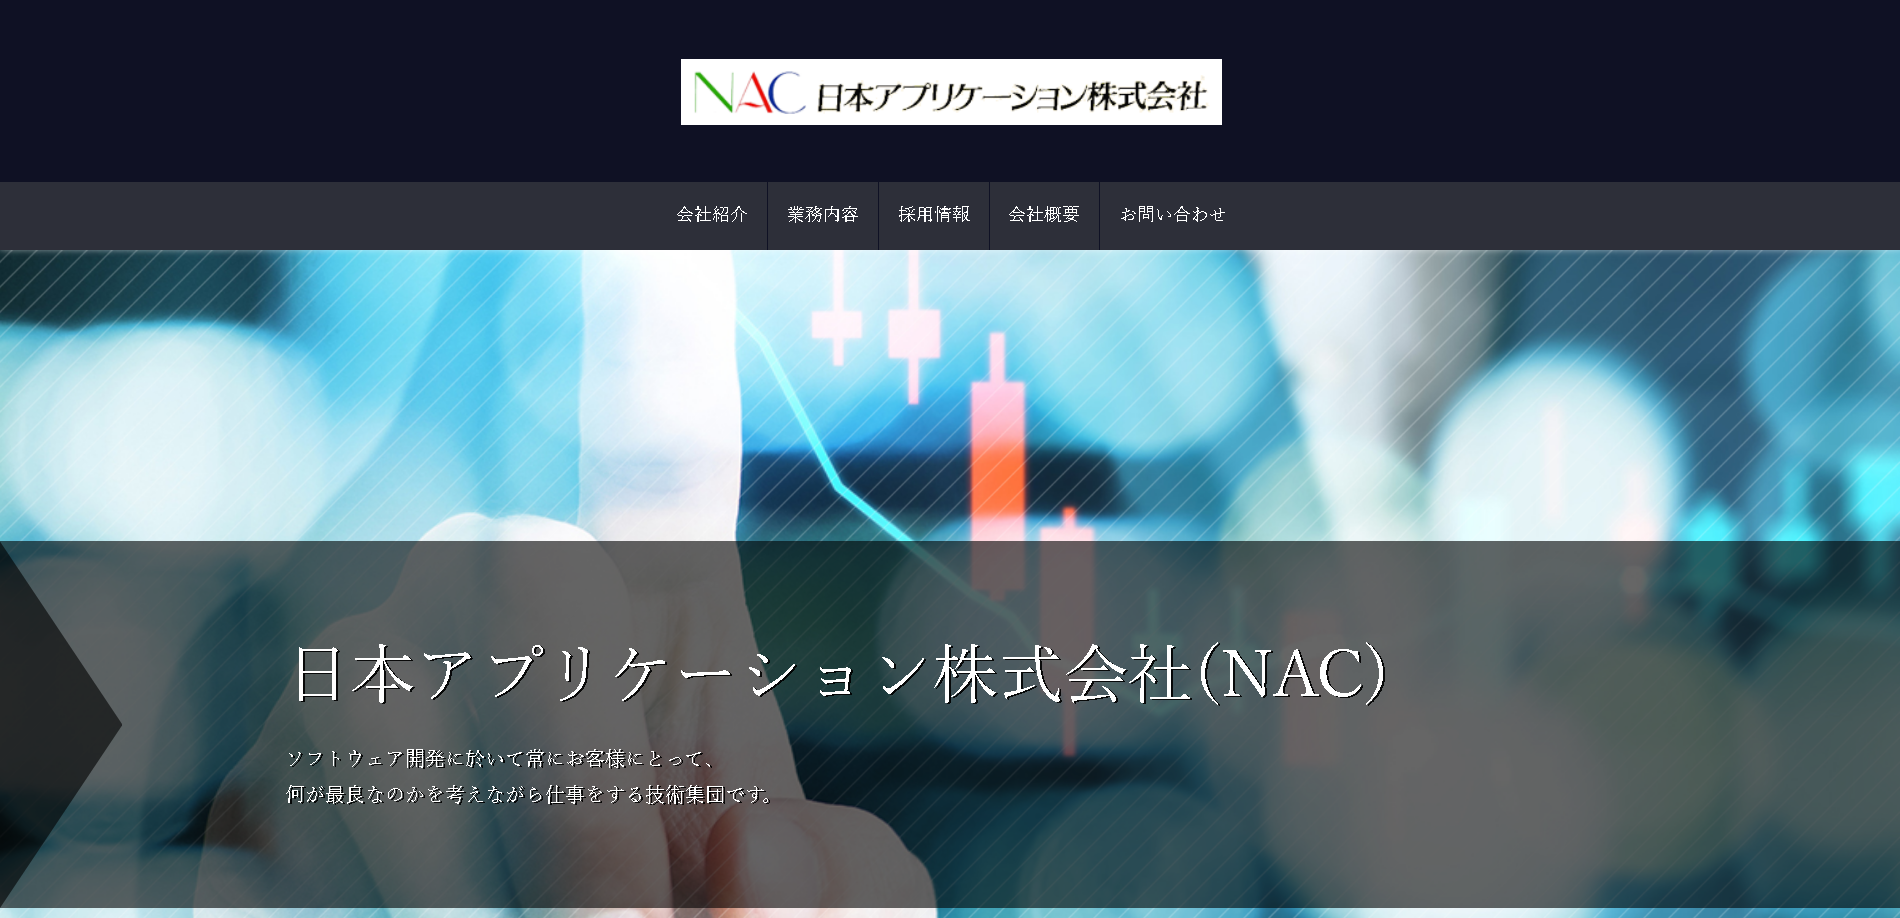 日本アプリケーション株式会社の日本アプリケーションサービス